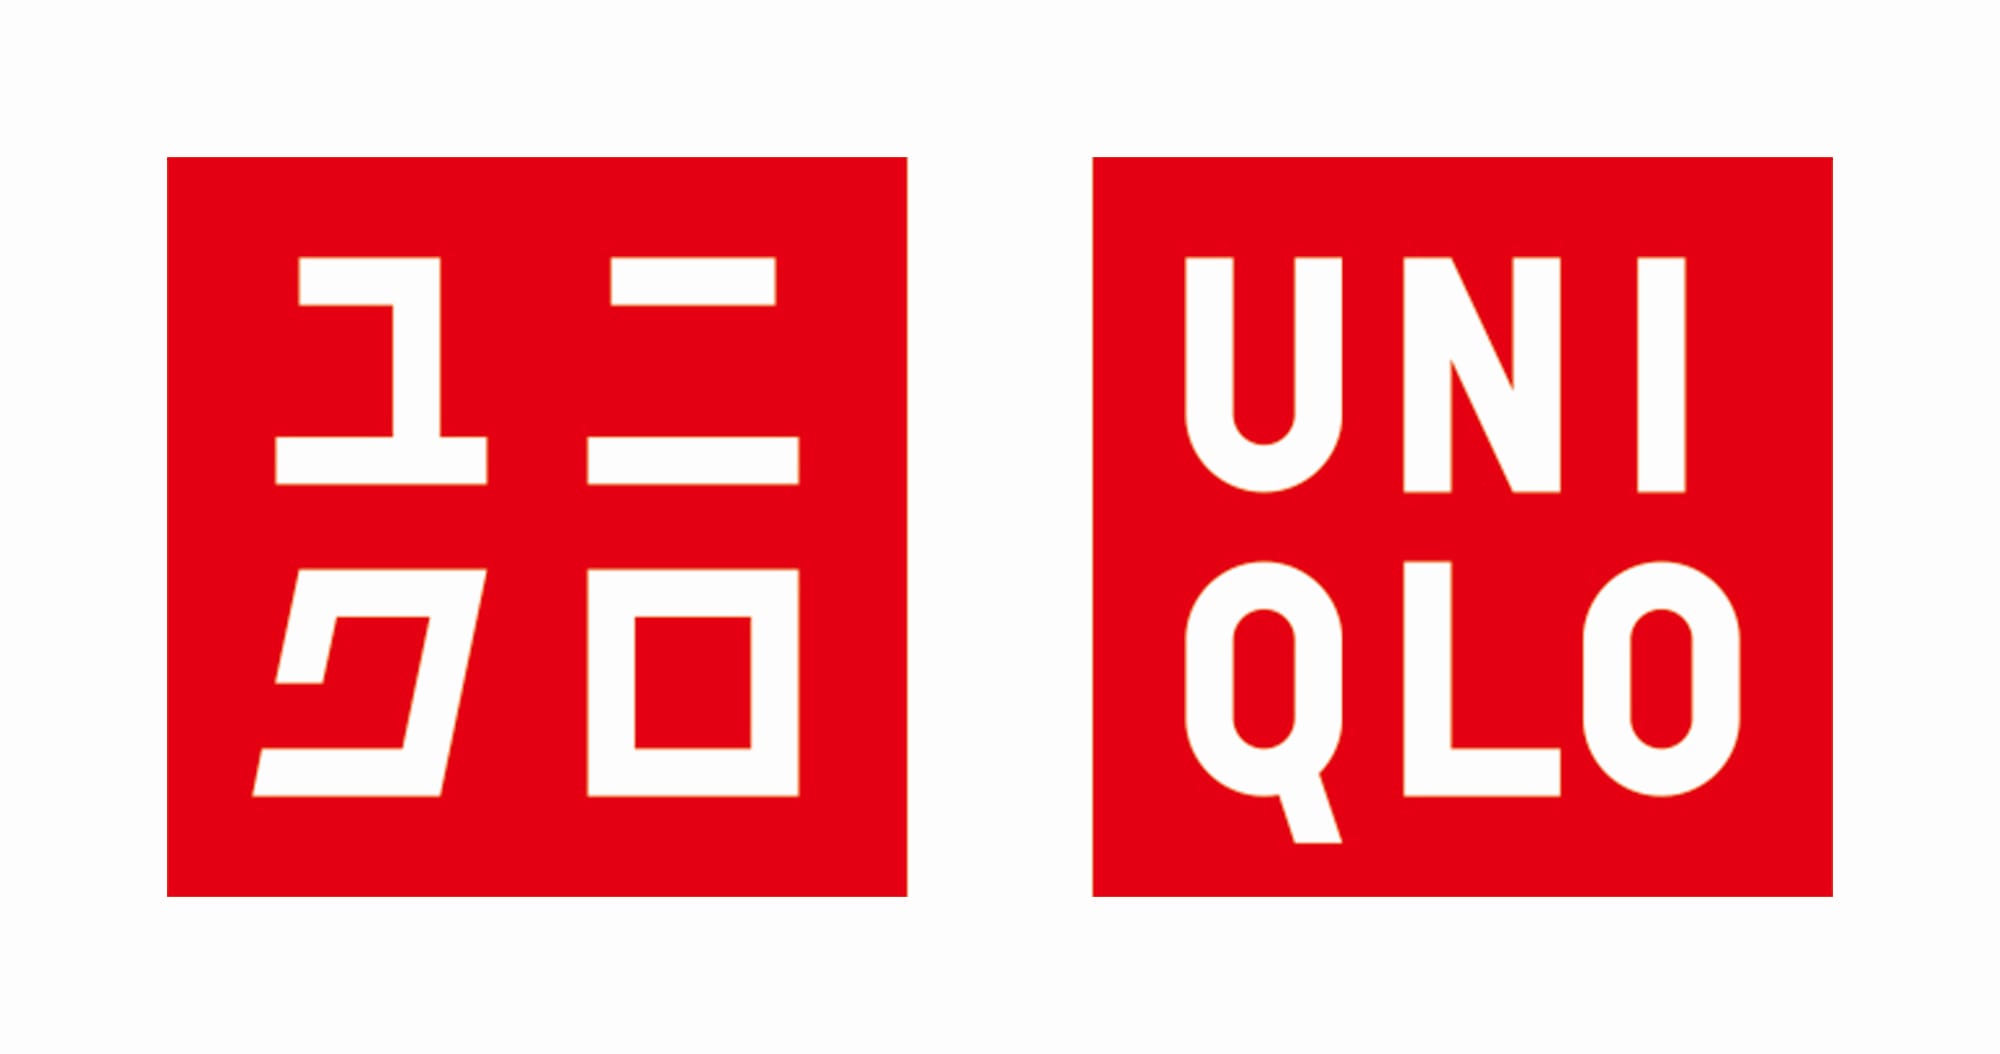 2006年，优衣裤纽约旗舰店新开幕，展开了“UNIQLO”的全球化品牌行销。从片假名与英文的LOGO到与国内外的创作者合作的旗舰店设计、产品规划和促销战略、经营面相关等进行全面的规划与指导。